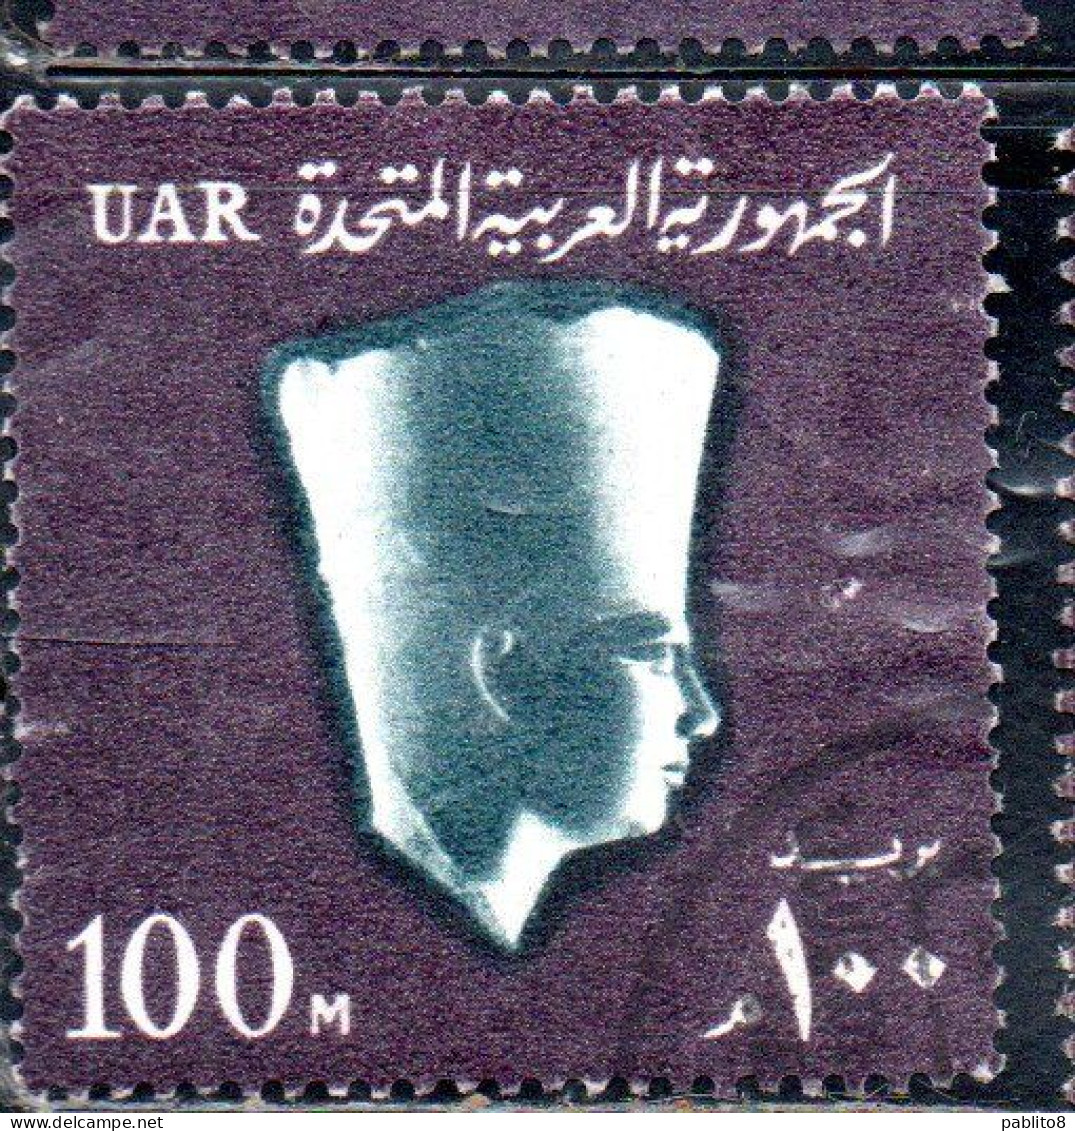 UAR EGYPT EGITTO 1964 1967 PHARAOH USERKAF 5th DYNASTY 100m USED USATO OBLITERE' - Gebruikt